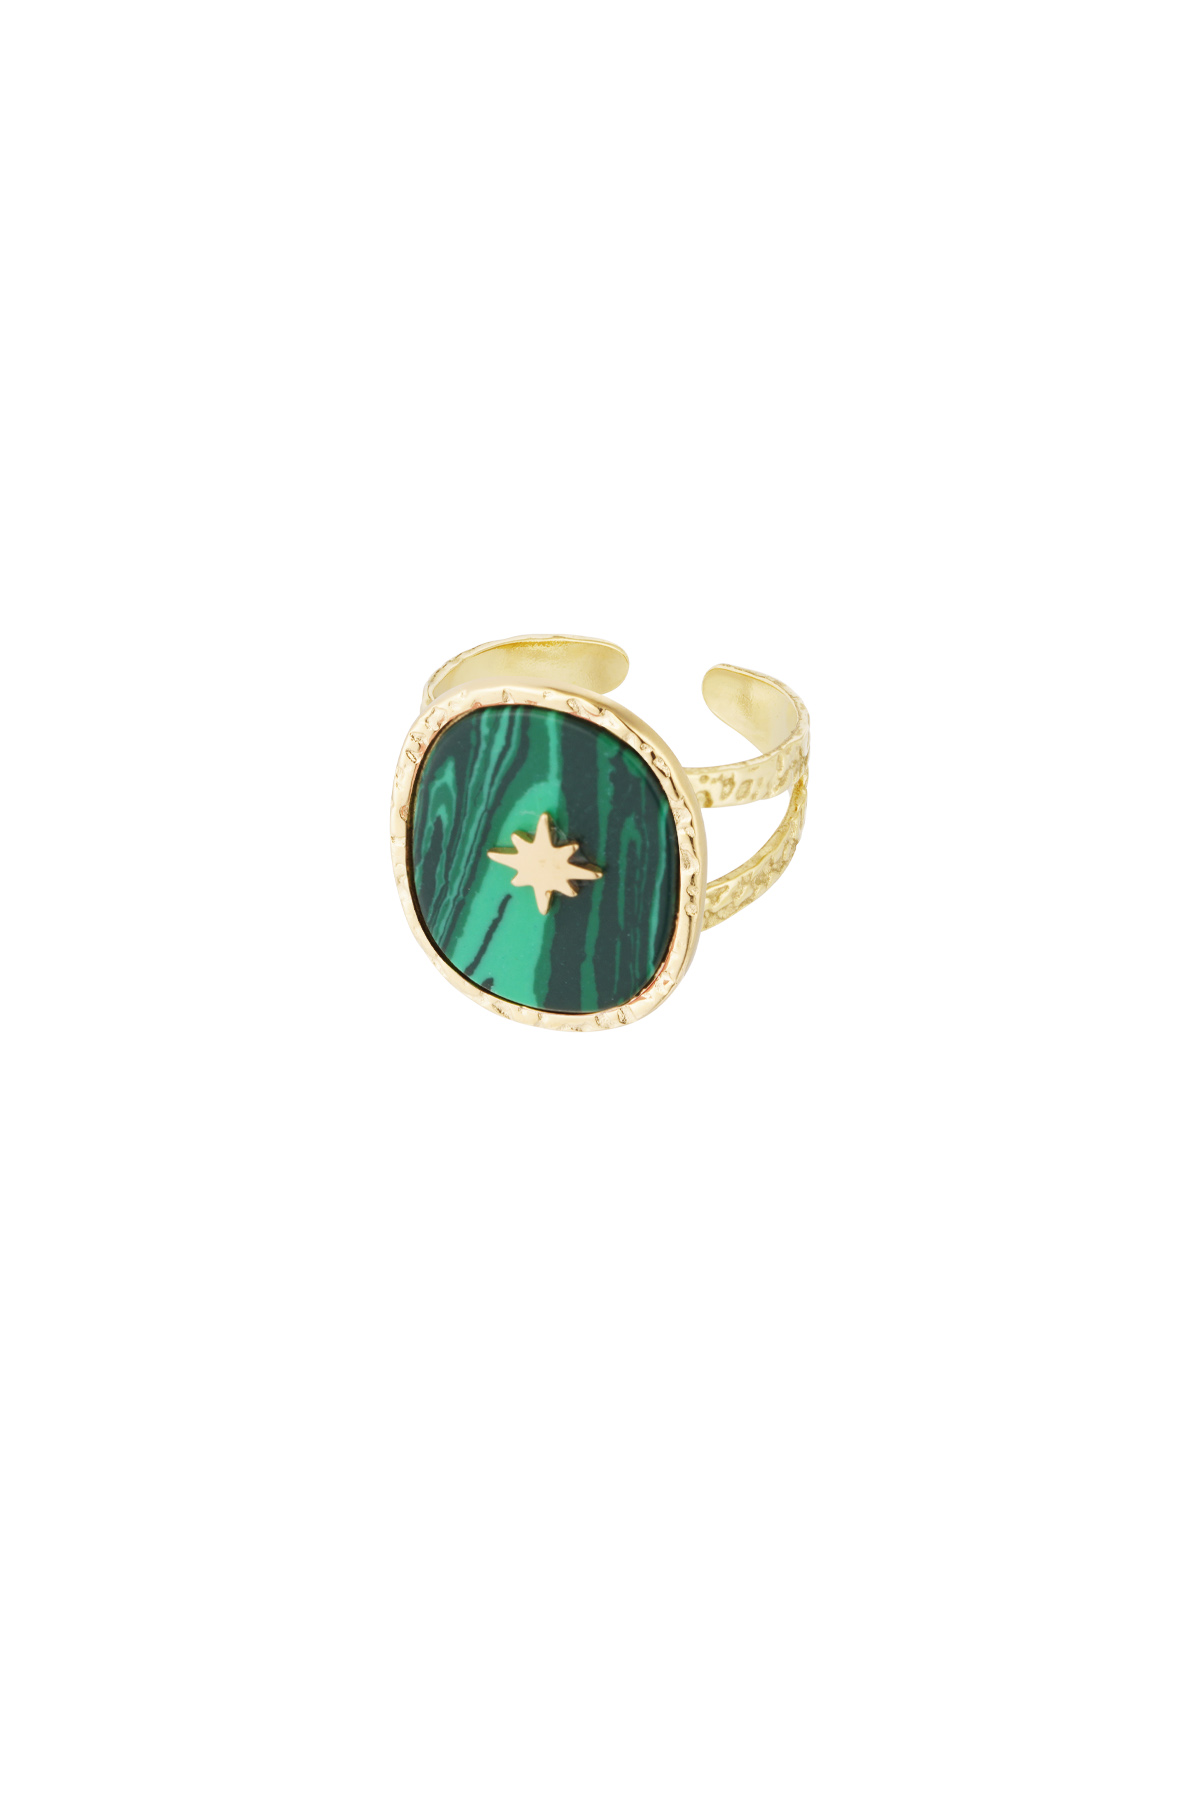 Ring steen met ster - goud/groen